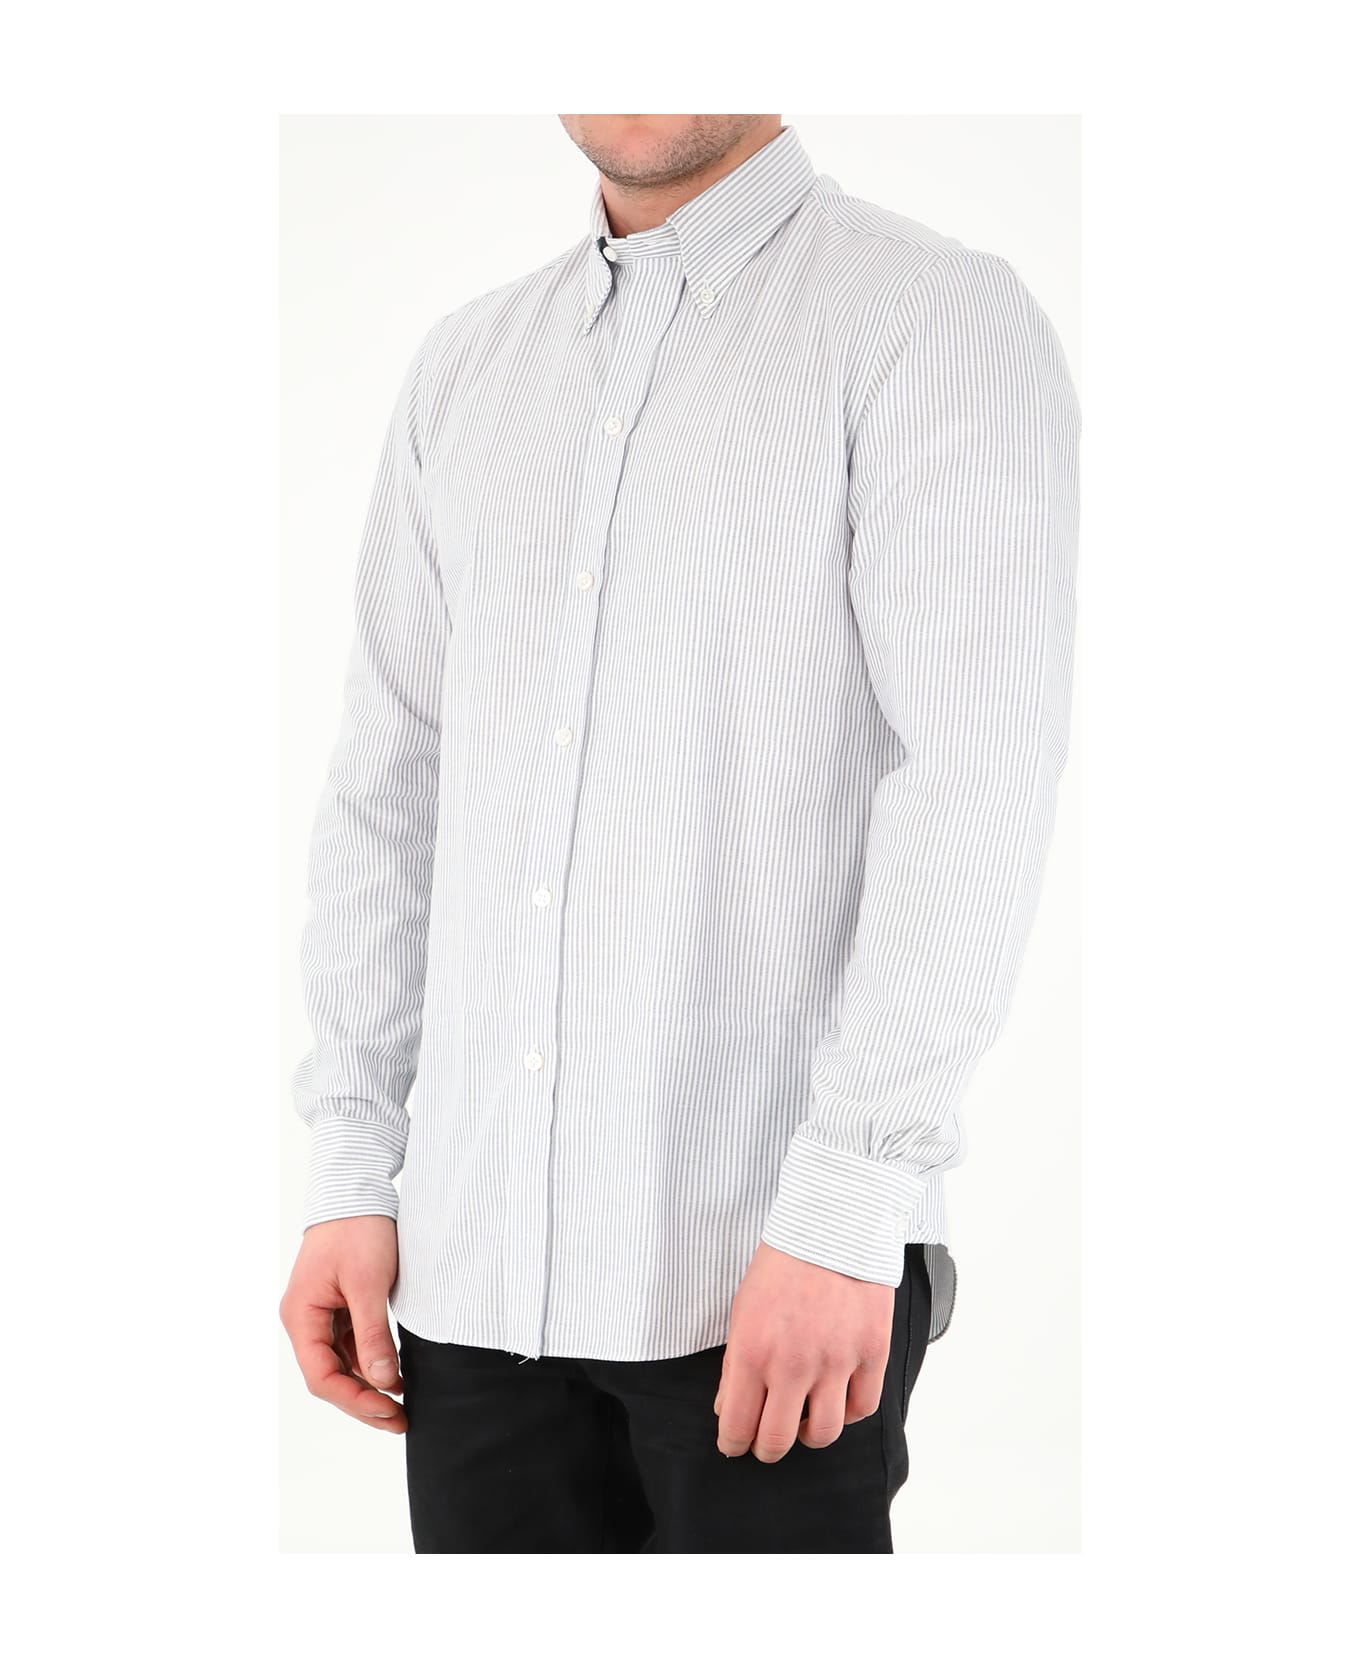 Salvatore Piccolo White And Blue Striped Shirt - WHITE